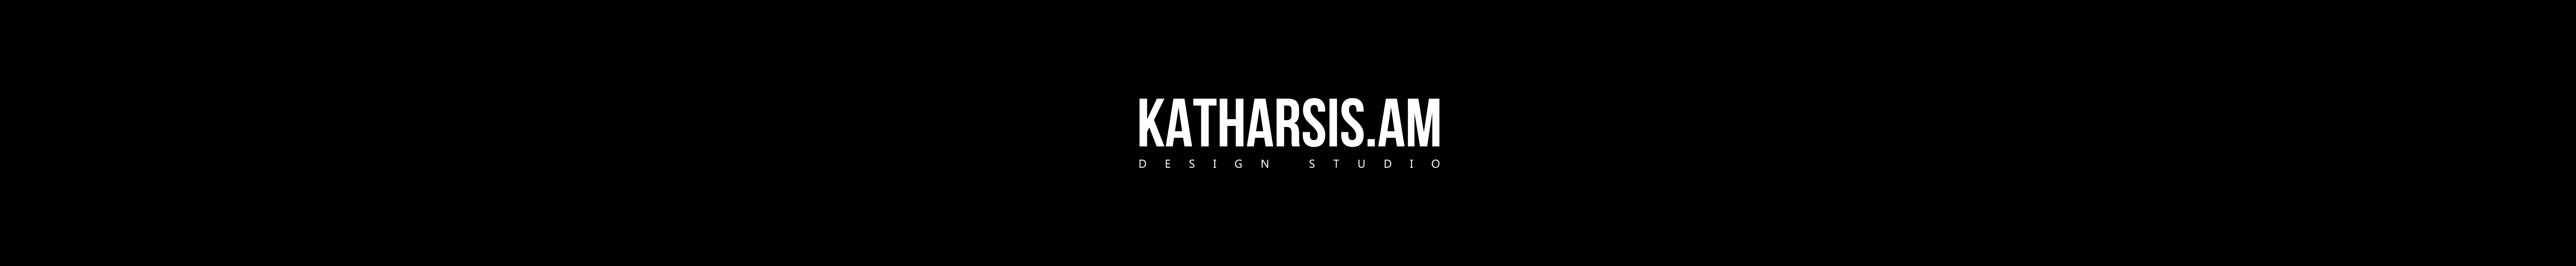 KATHARSIS ®'s profile banner